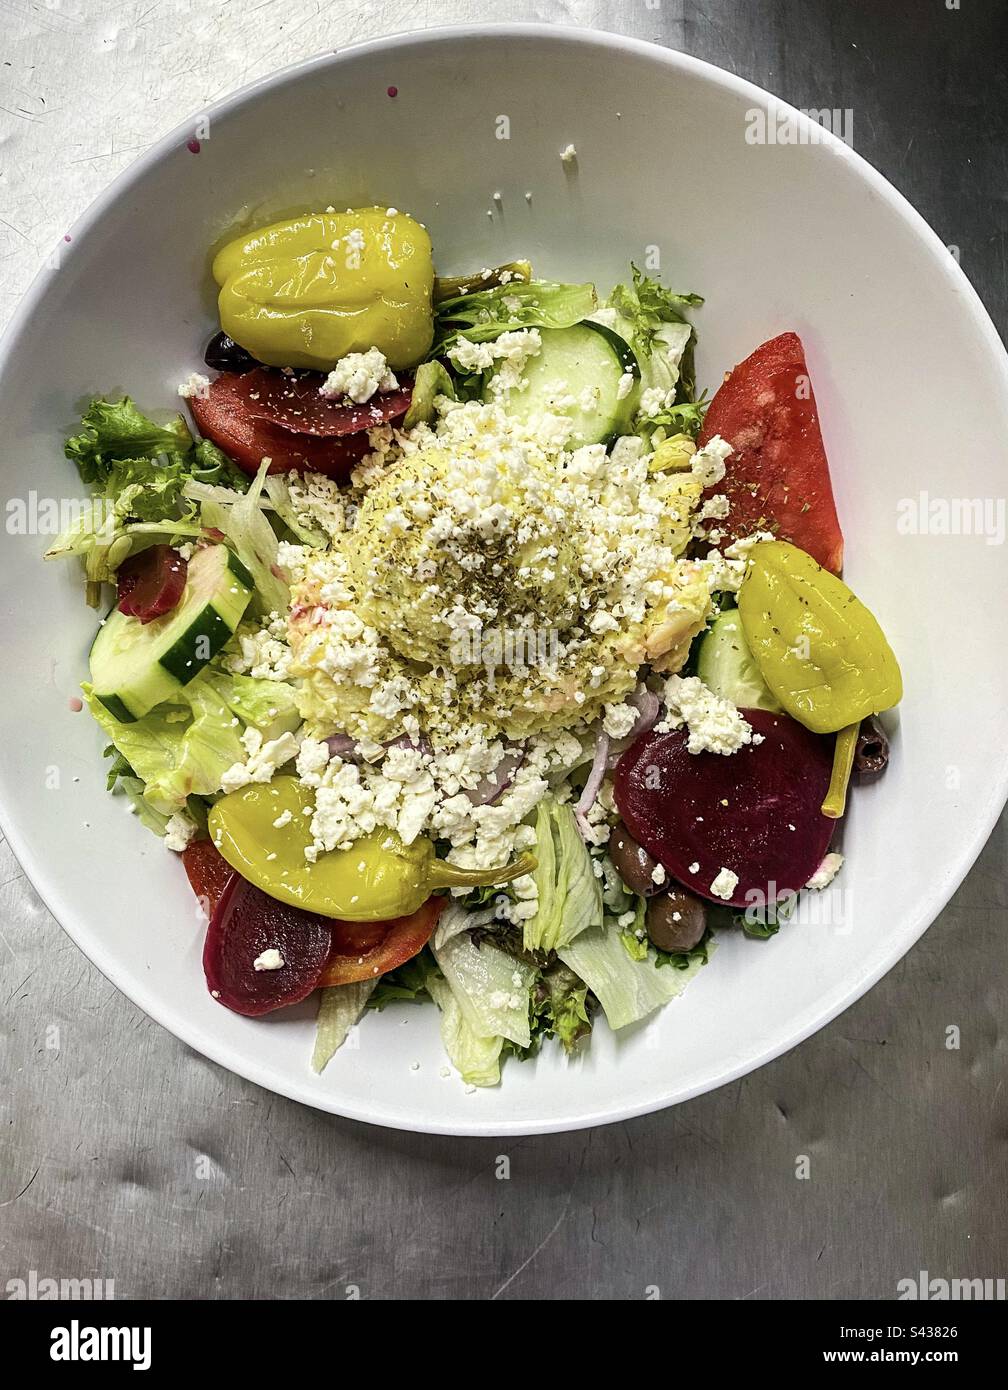 Griechischer Salat mit Kartoffelsalat, Feta, Paprika, Rüben, Oliven, Tomaten und Gurken Stockfoto